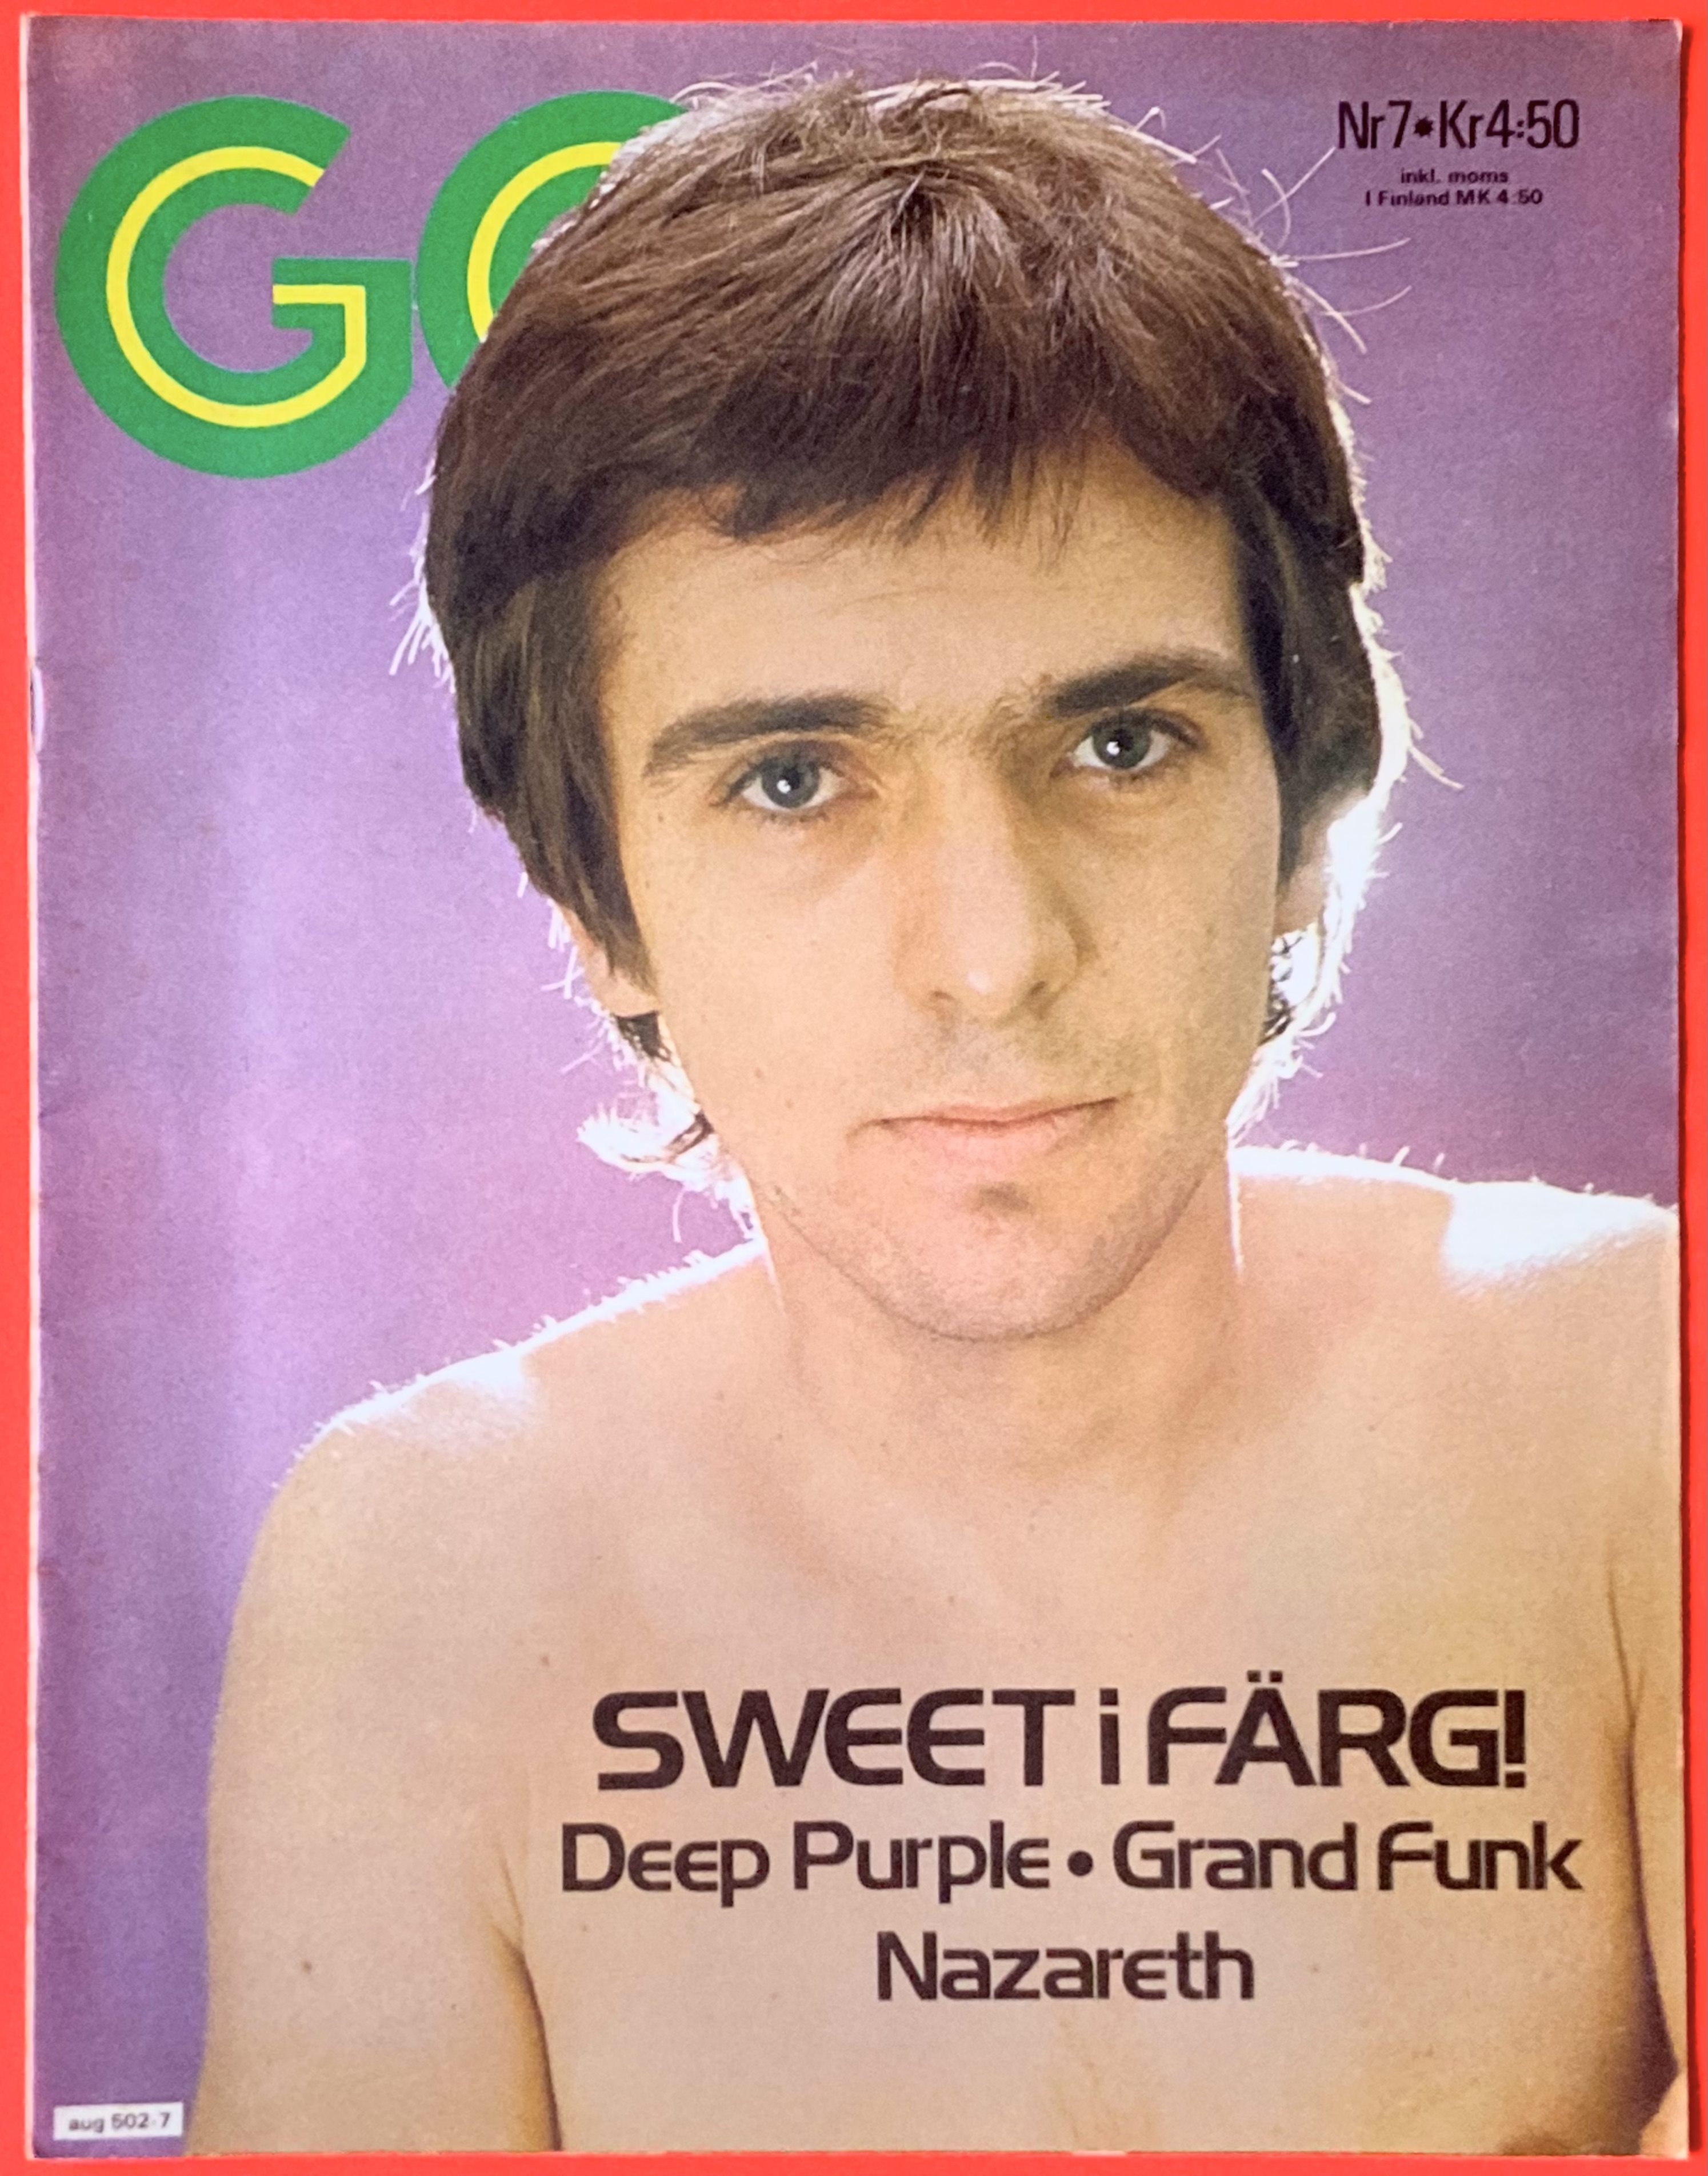 Nostalgipalatset Go No 7 1975 Peter Gabriel Cover